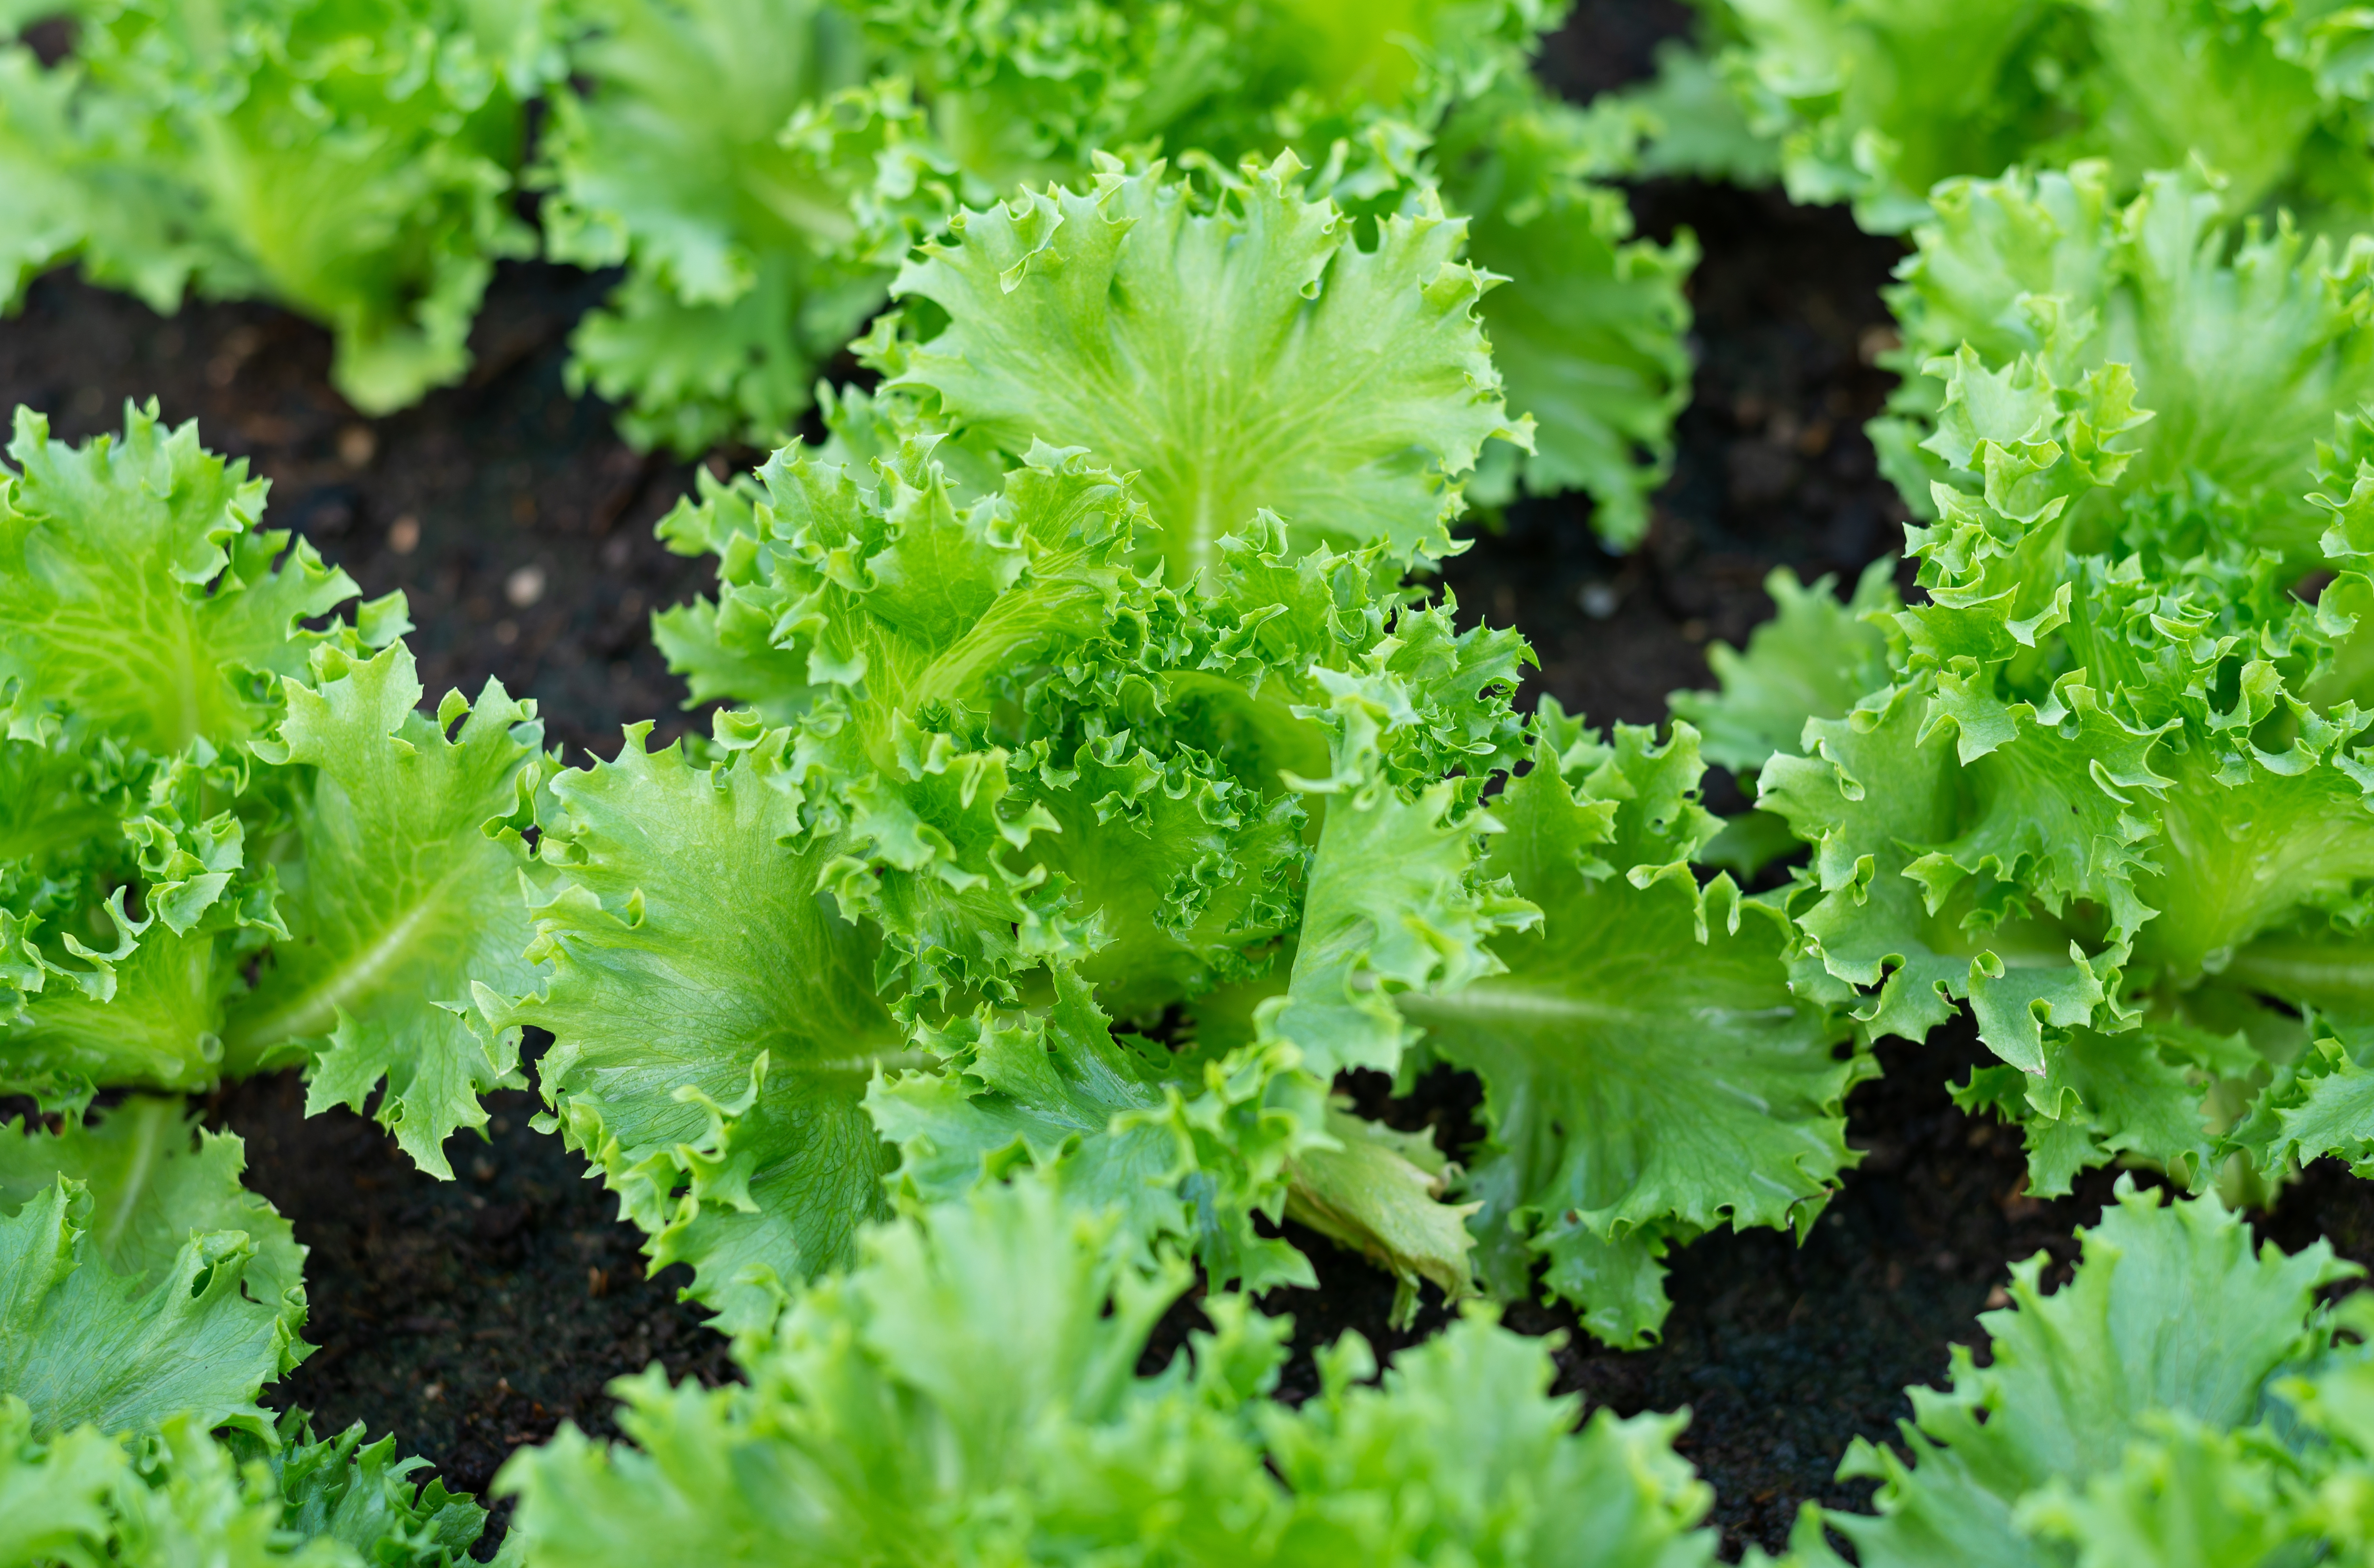 Variété de laitue batavia, la salade iceberg est rustique et de culture facile. Légume feuille par excellence, elle forme une pomme bien ferme et compacte. Copyright (c) 2022 woraatep suppavas/Shutterstock.